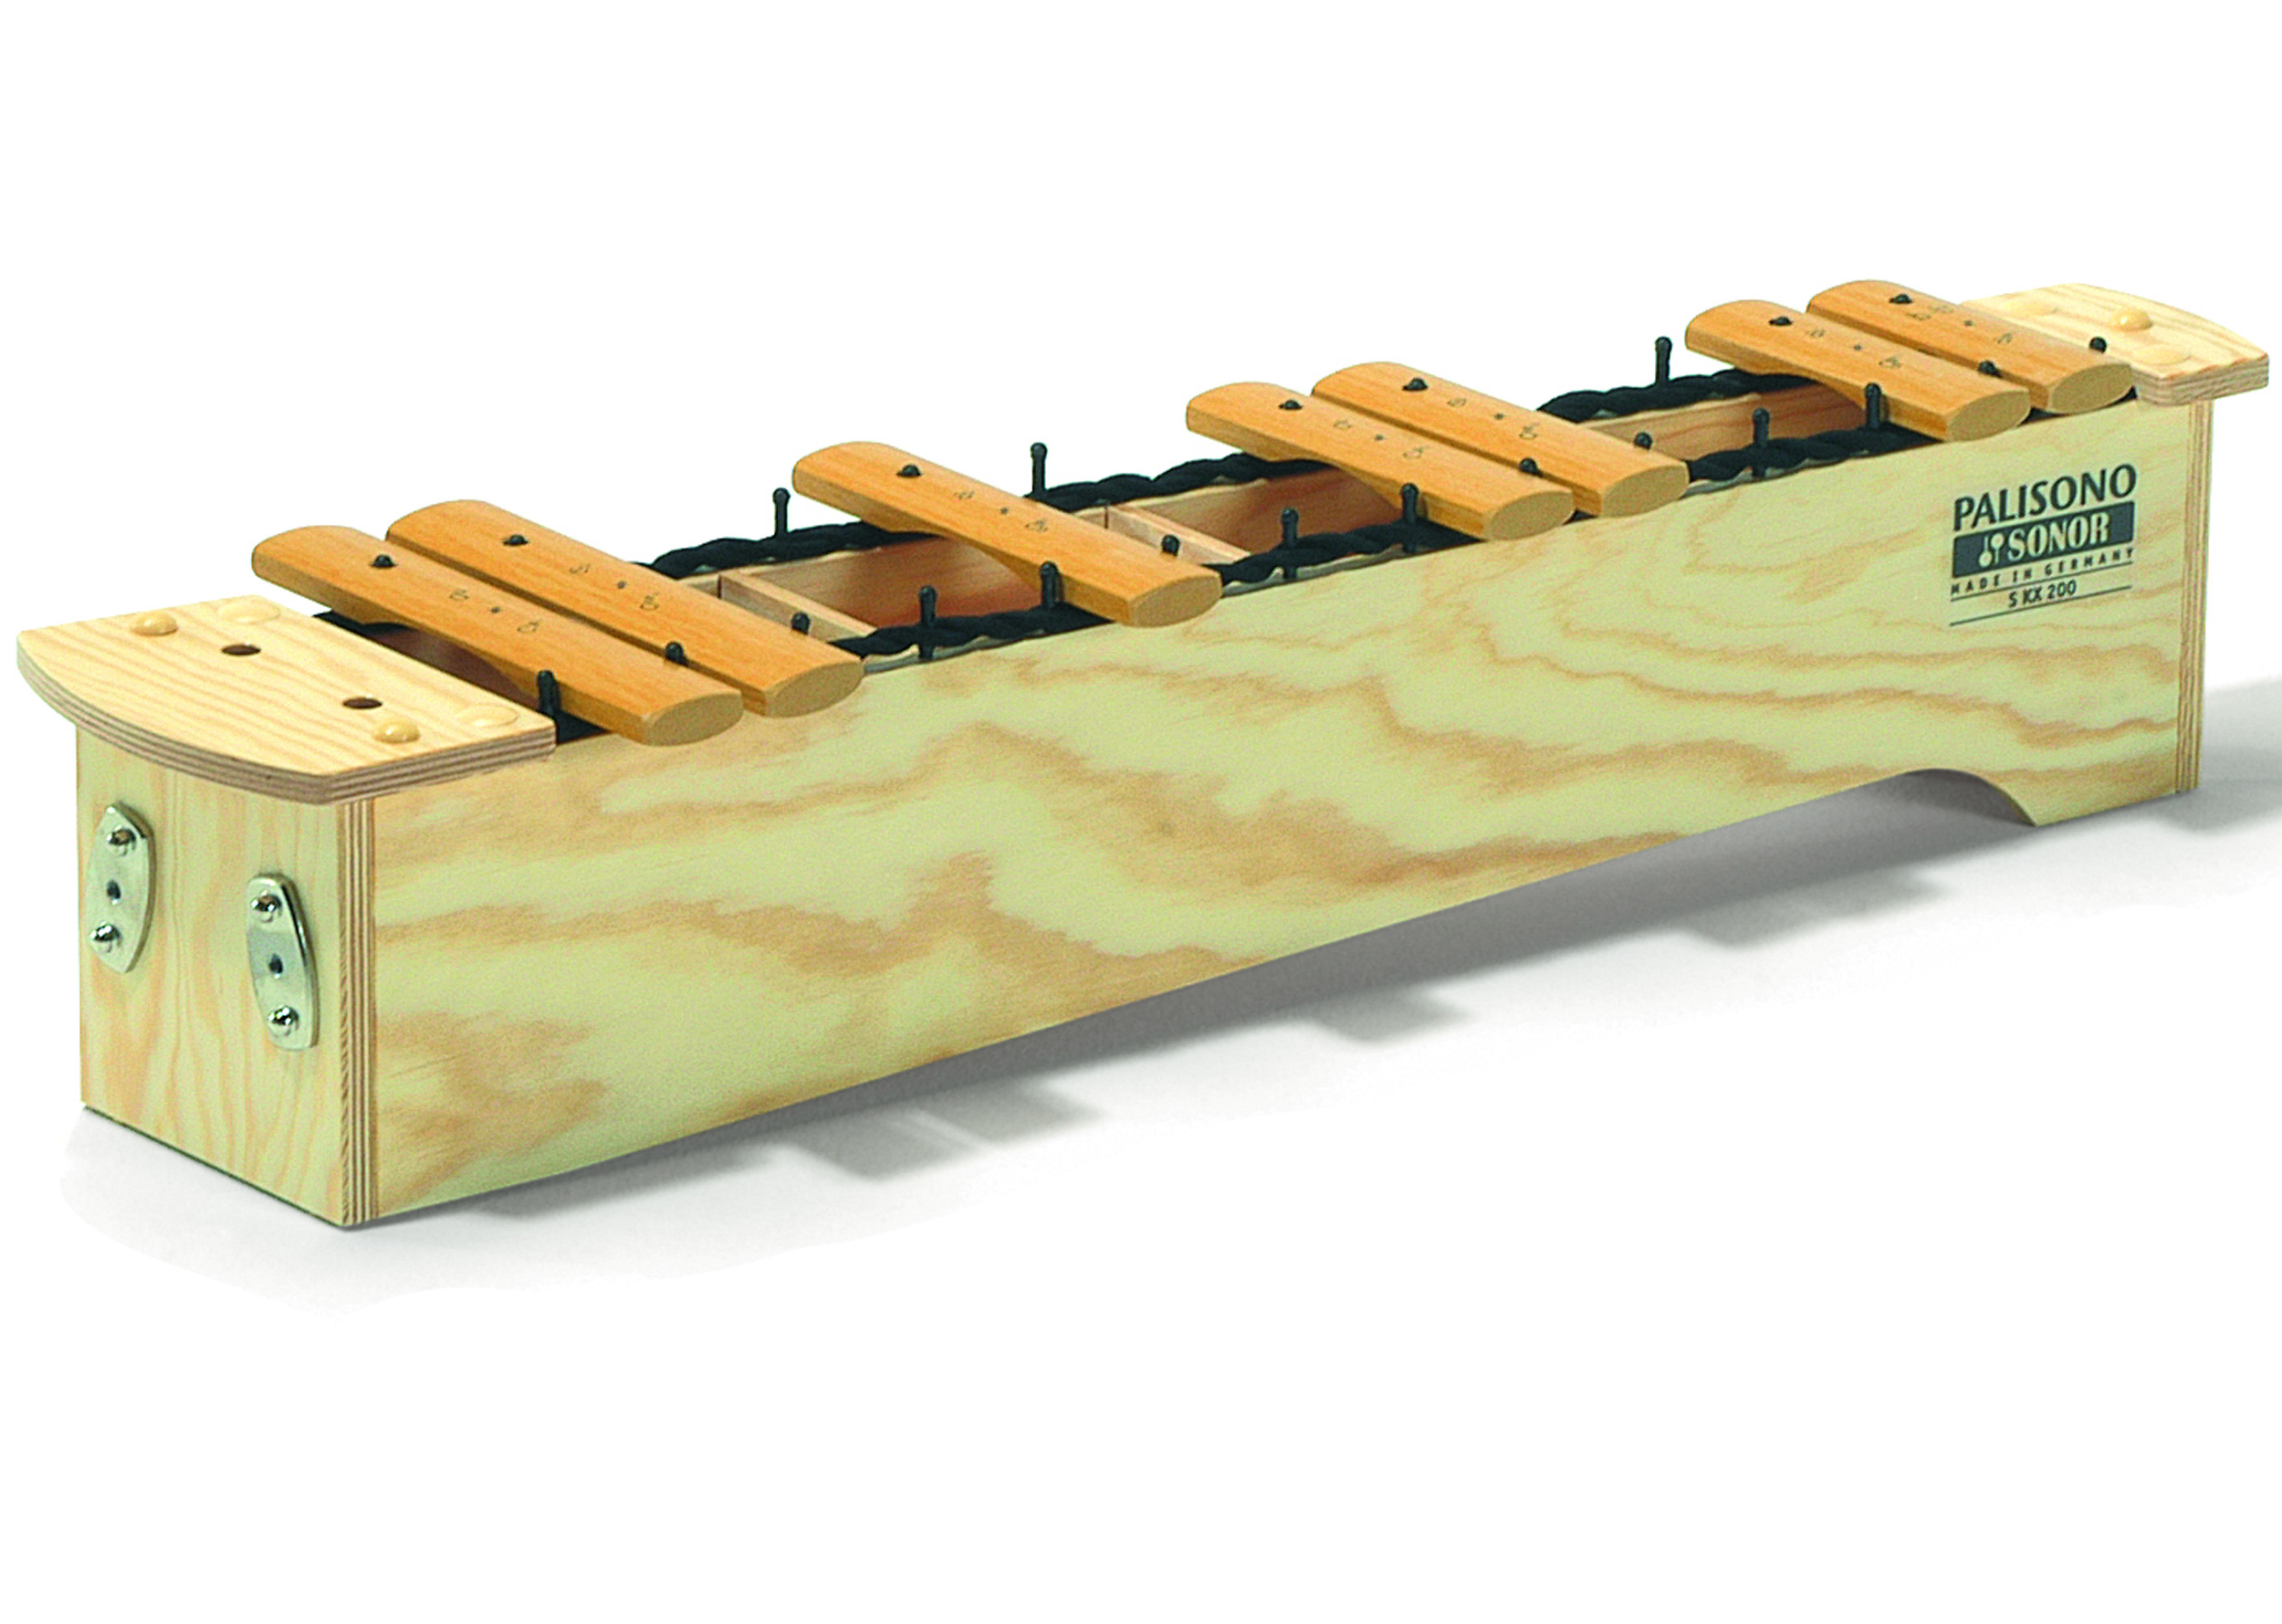 Sonor SKX200 Soprano Xylophone chromatic section - Palisono (Glassfibre) Bars